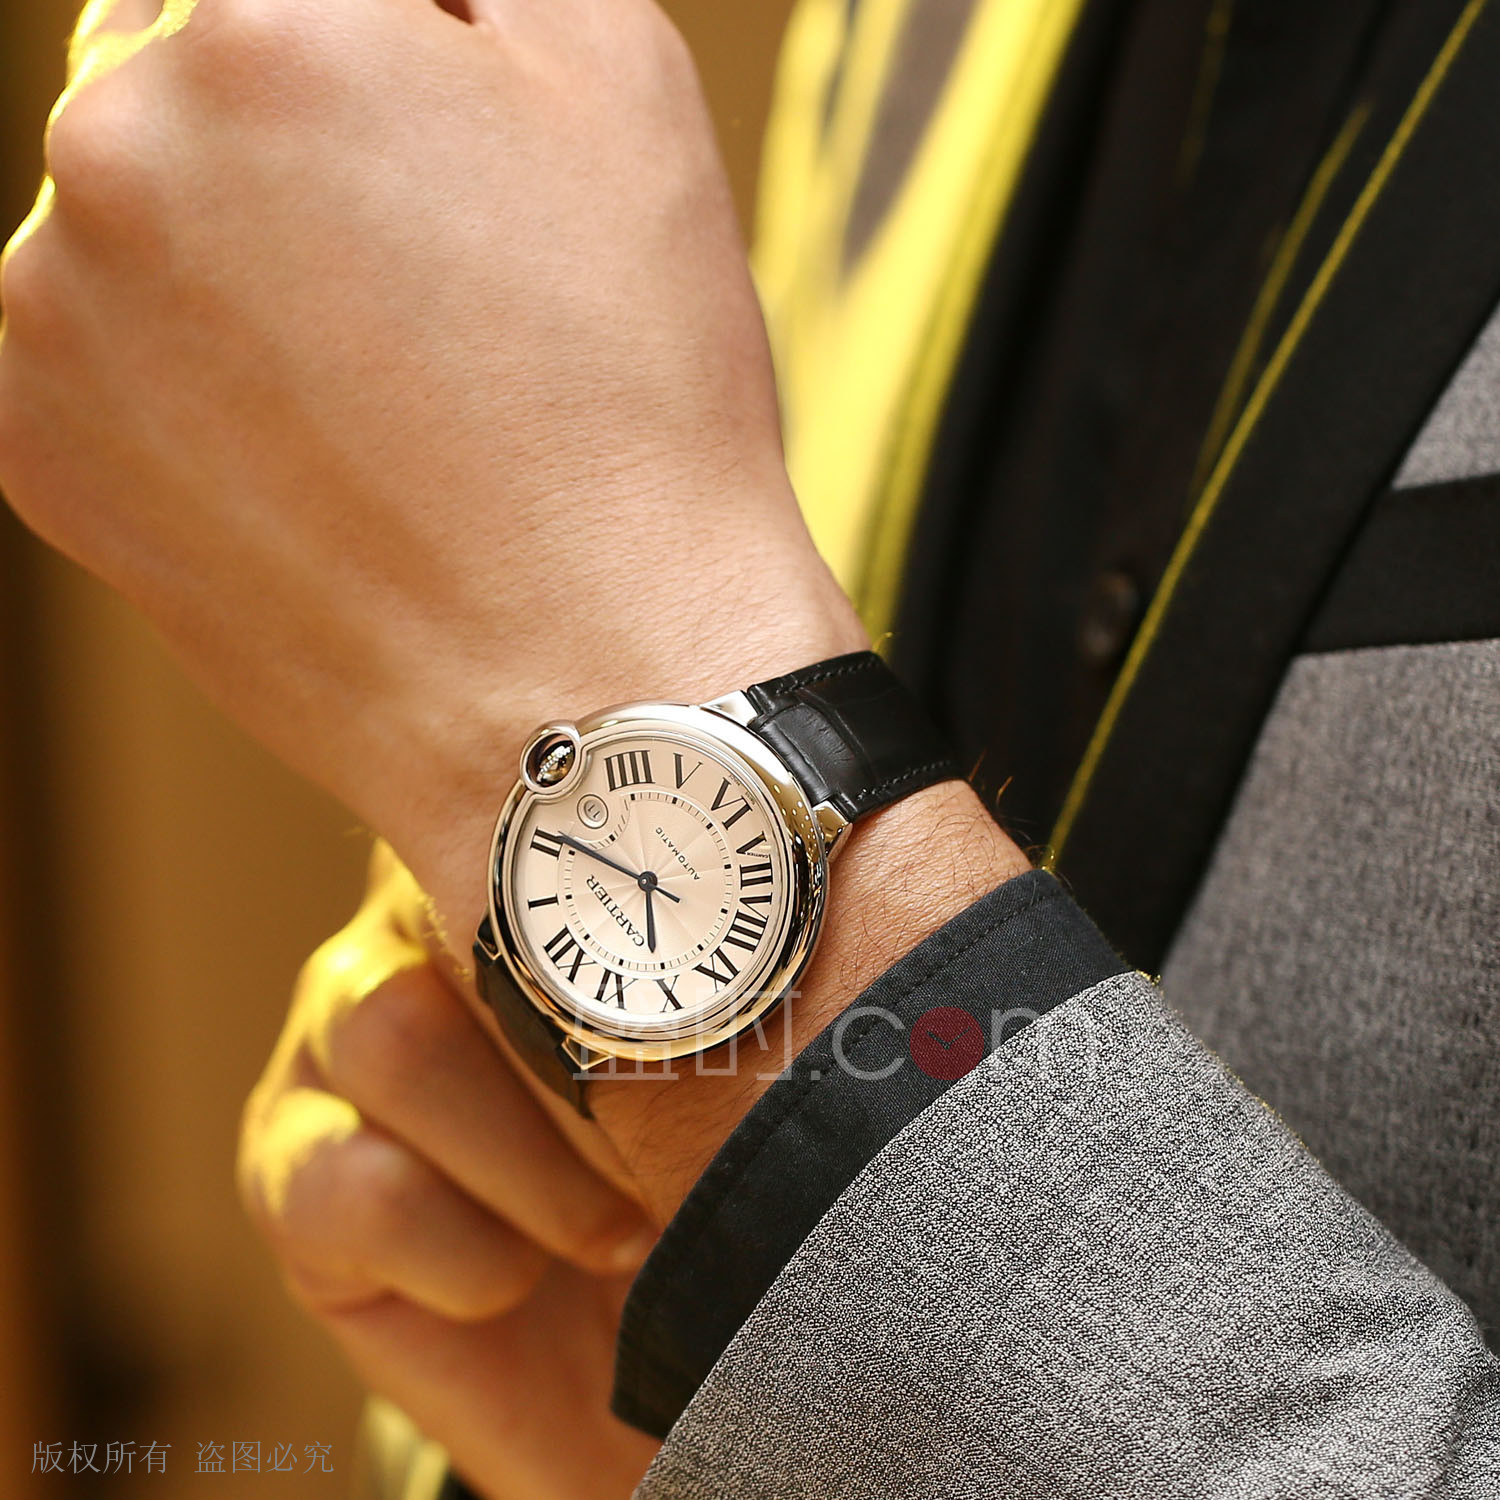 卡地亚 Cartier BALLON BLEU DE CARTIER腕表 W69016Z4 机械 男款